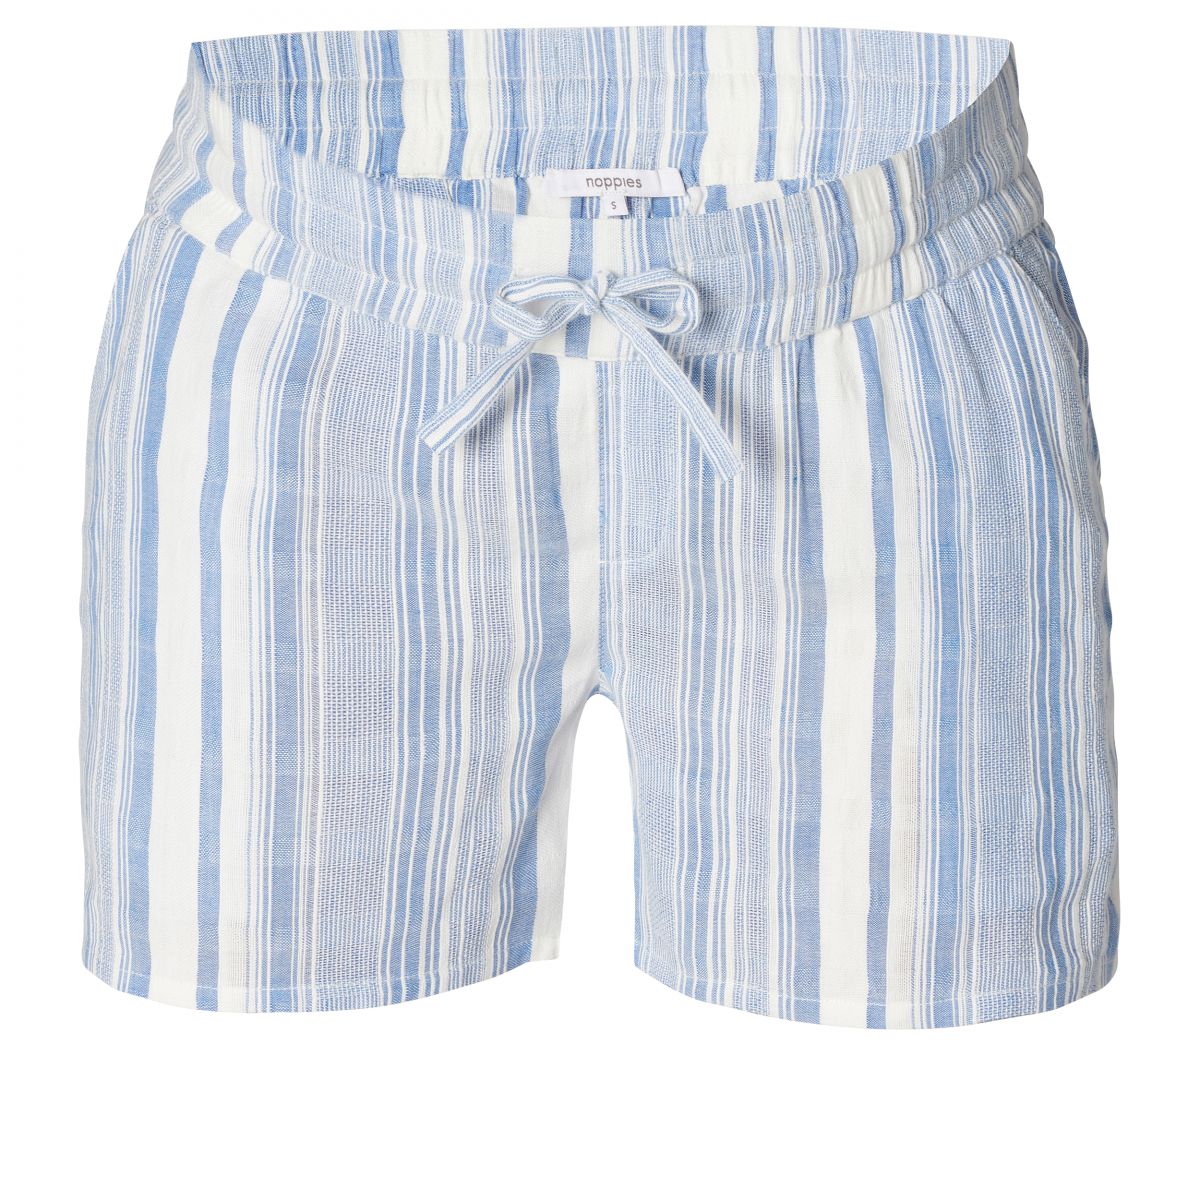 Sandalen Shipley pil NOPPIES - shorts Deseto stripe blue-white - Bellyfashion.nl